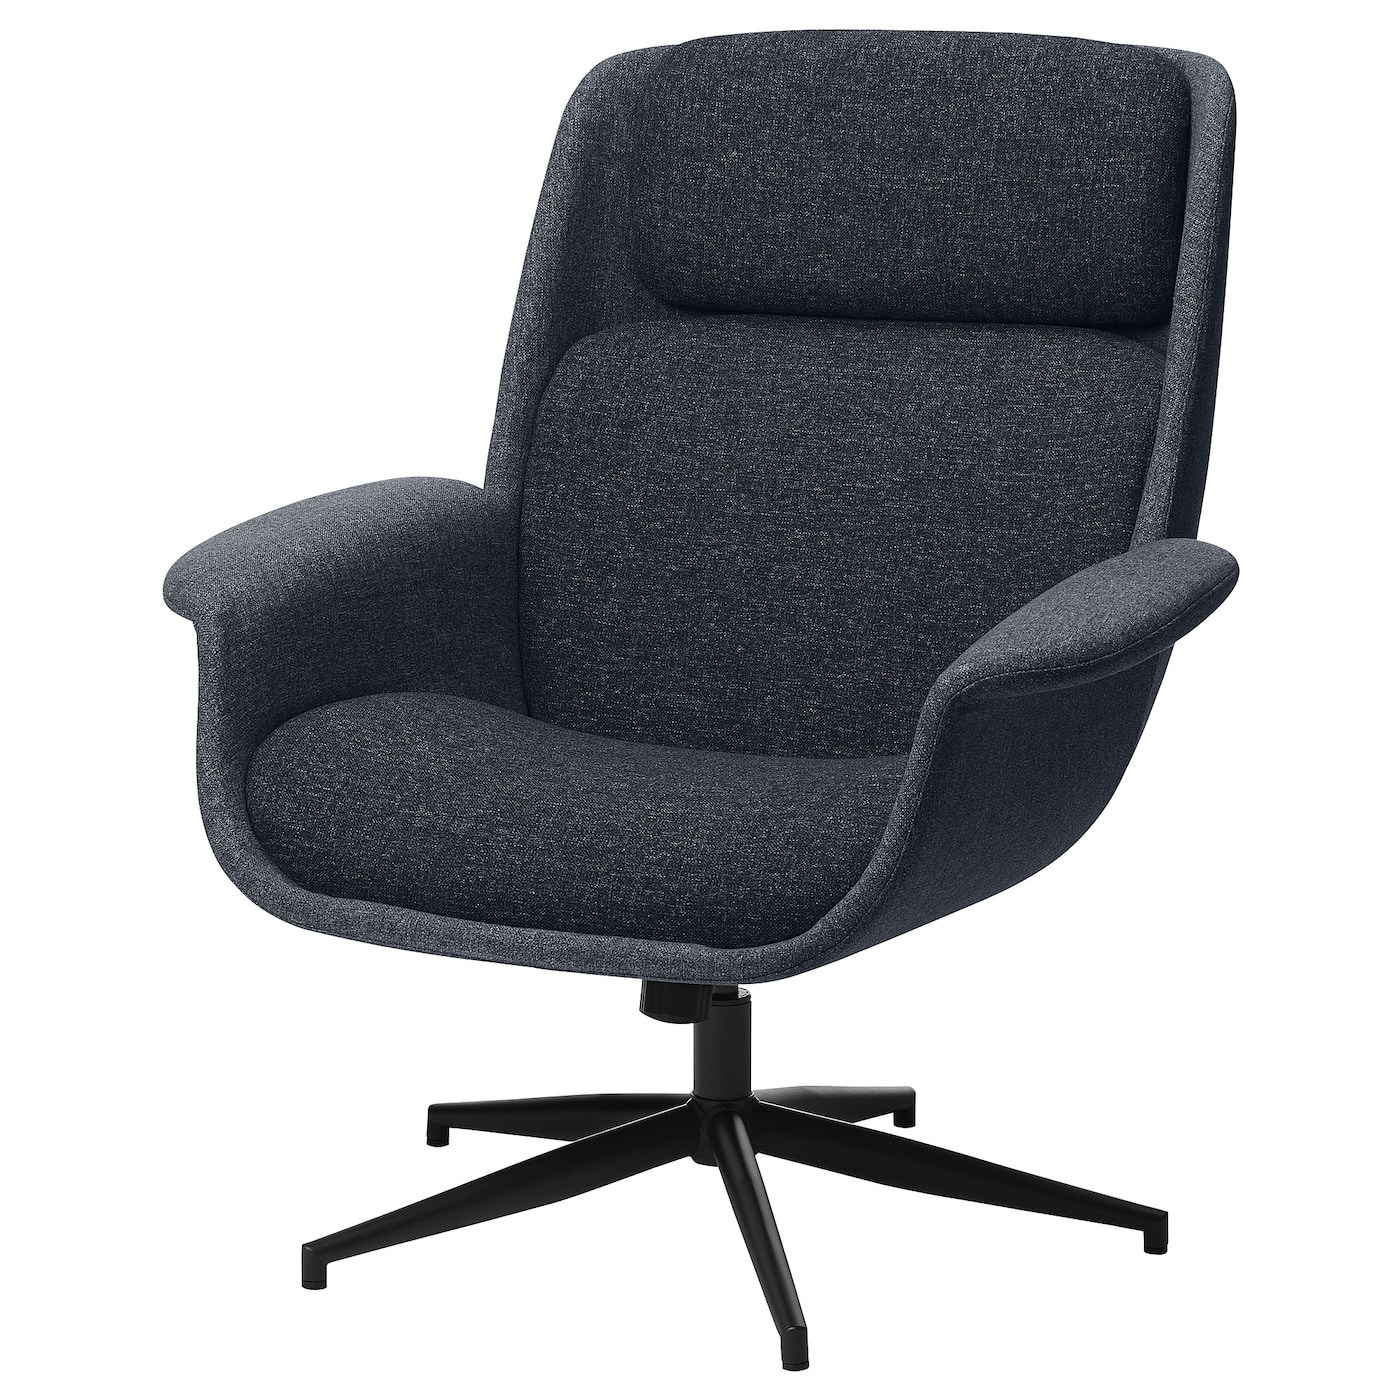 ЭЛЕБИ Вращающееся кресло, Гуннаред средний серый/темно-серый ÄLEBY IKEA игровое кресло компьютерное кресло для дома удобное кресло с длинным сидением подъемное вращающееся офисное кресло регулируемое кресло